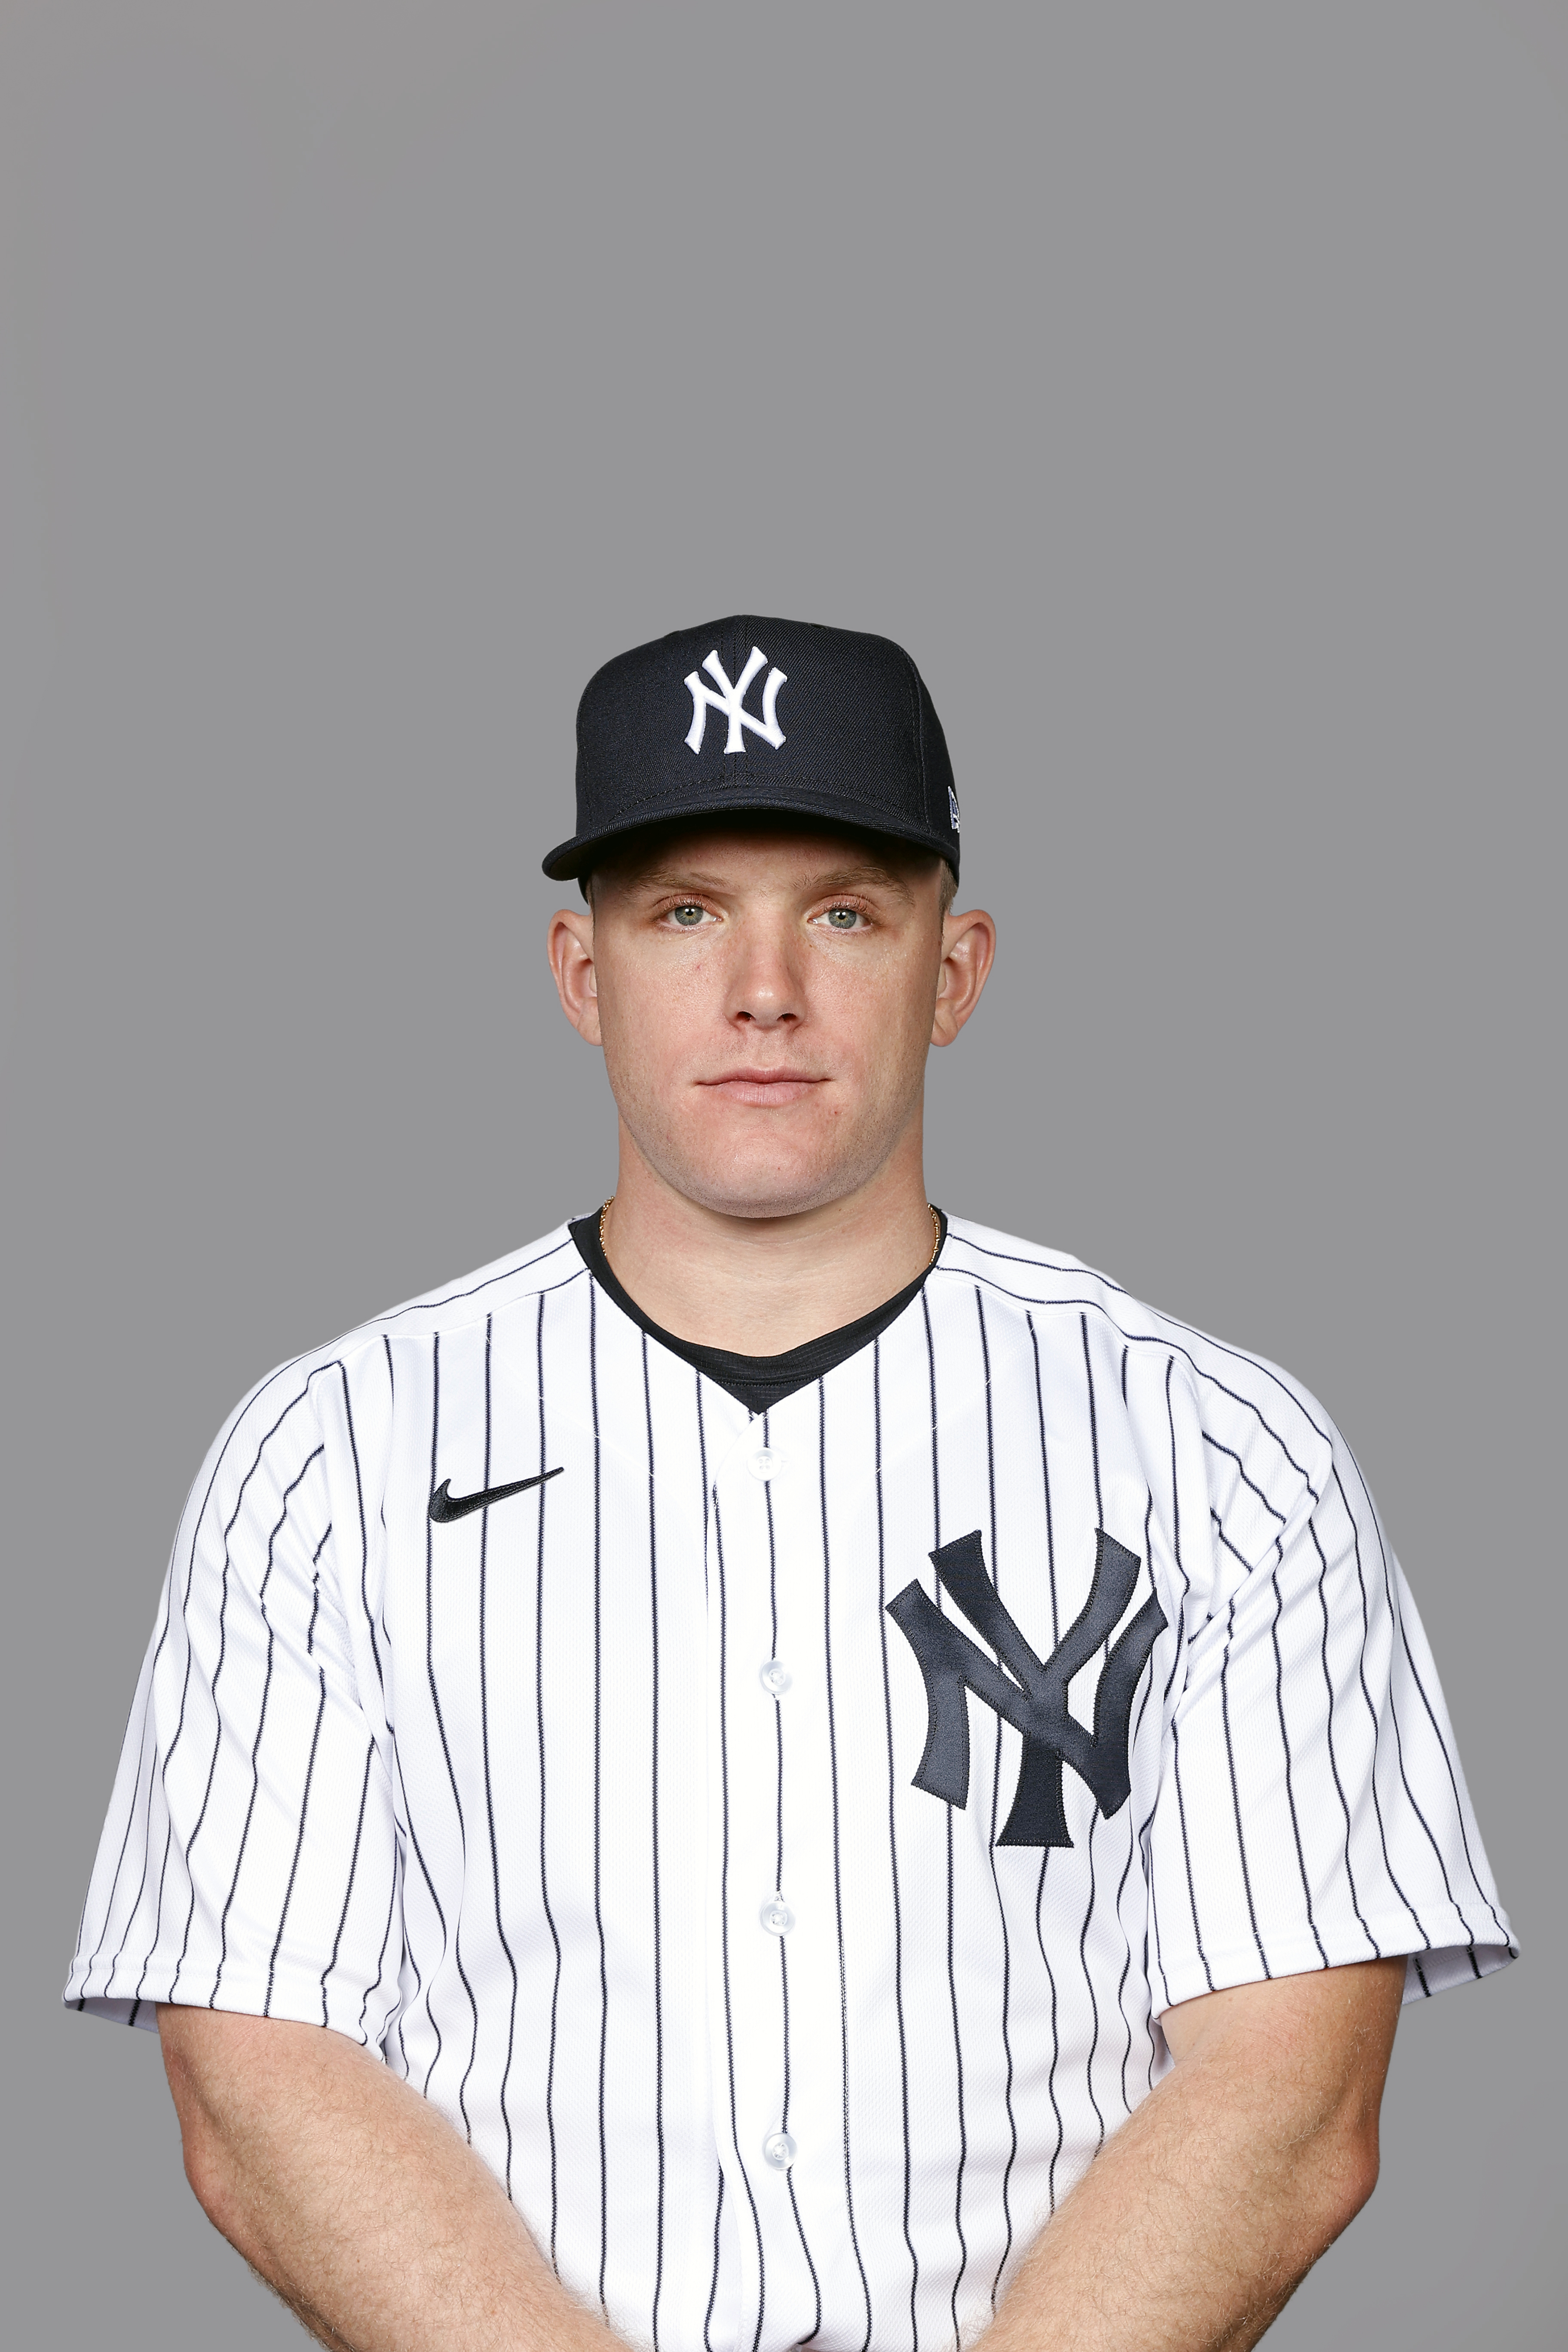 New York Yankees headshot